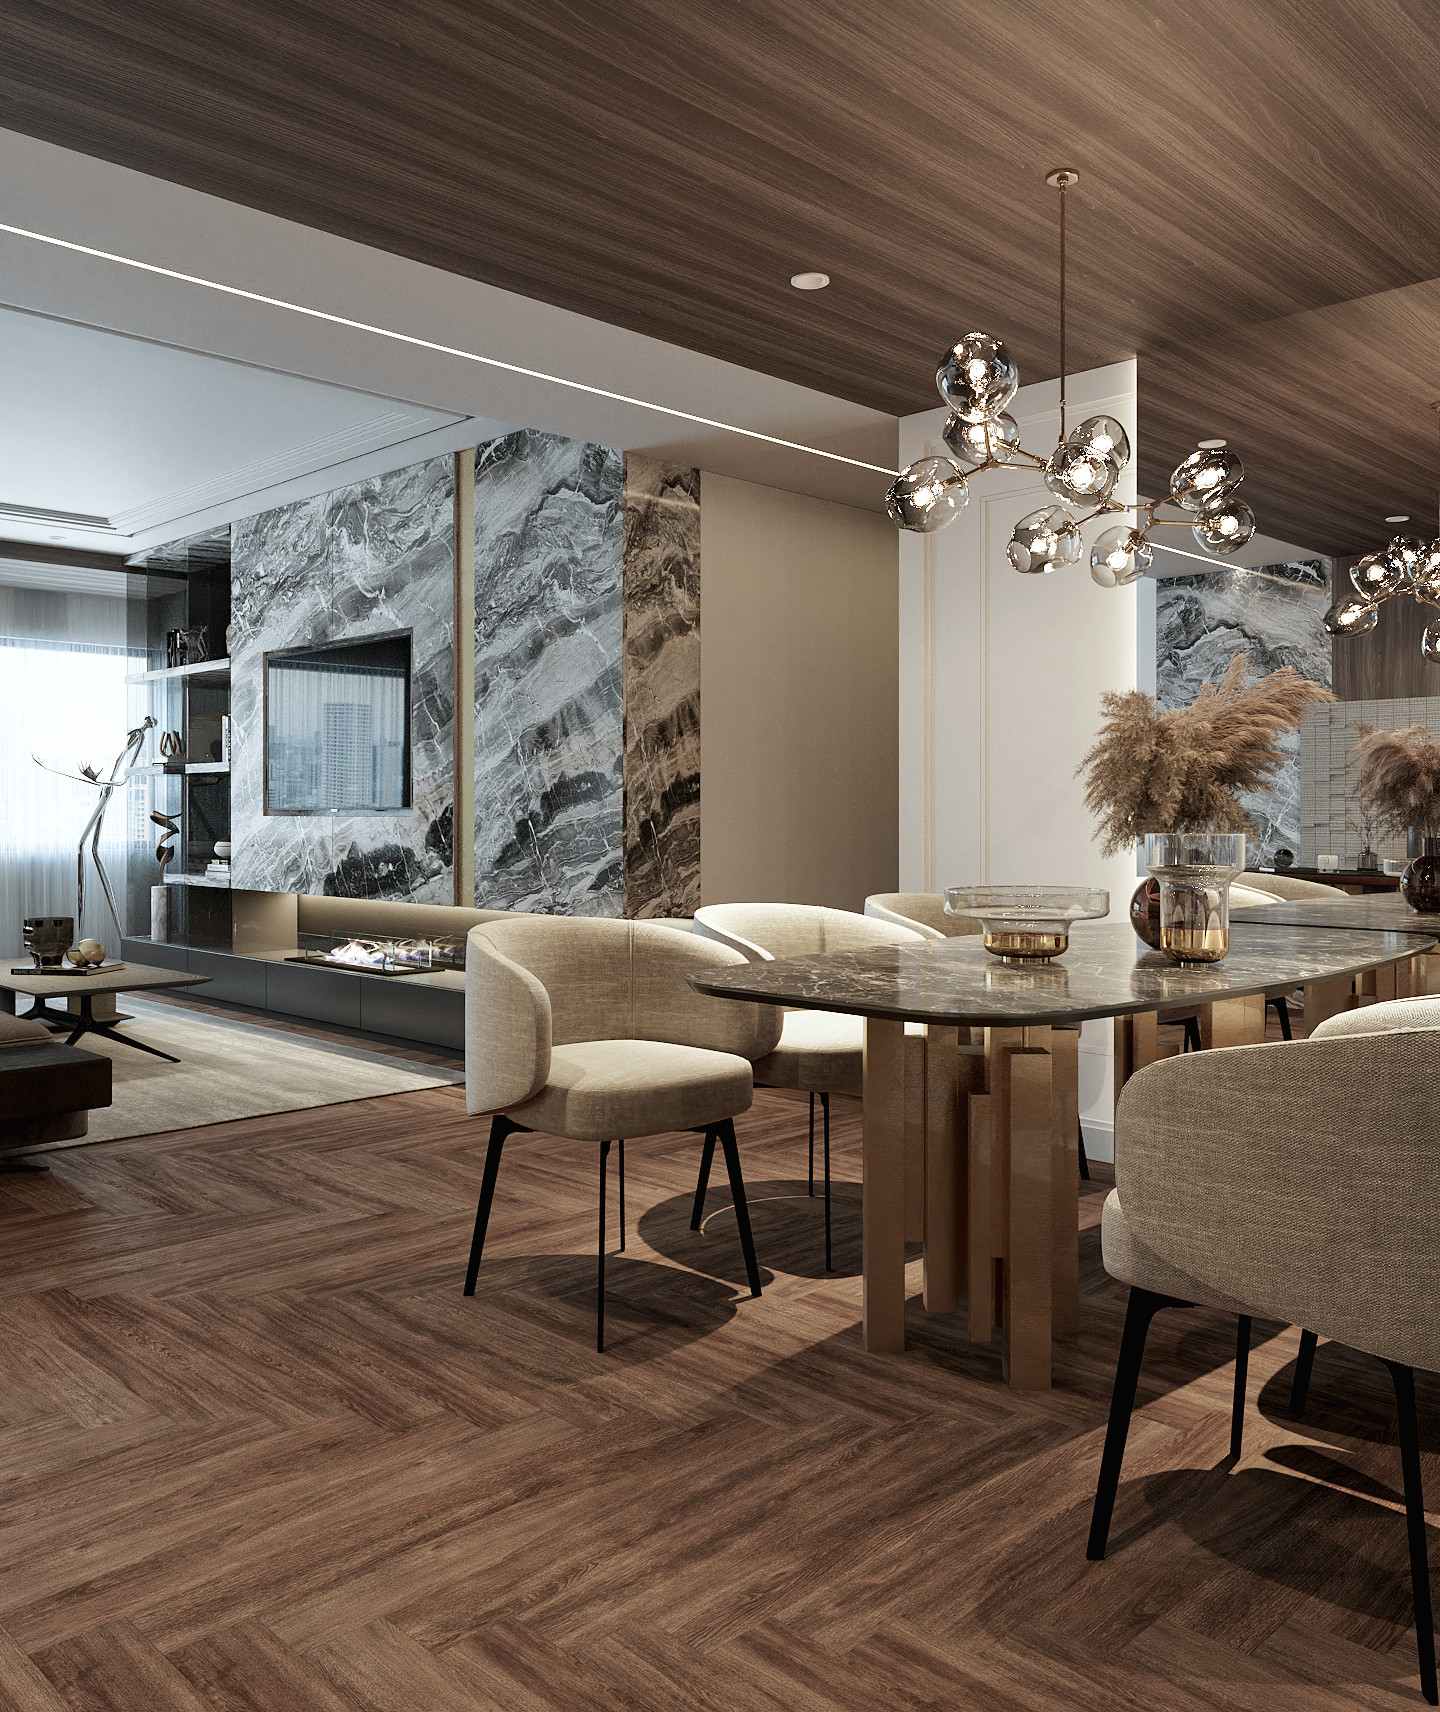 Phòng ăn, phong cách Hiện đại Modern, thiết kế concept nội thất, căn hộ Saigon Pearl Topaz 2